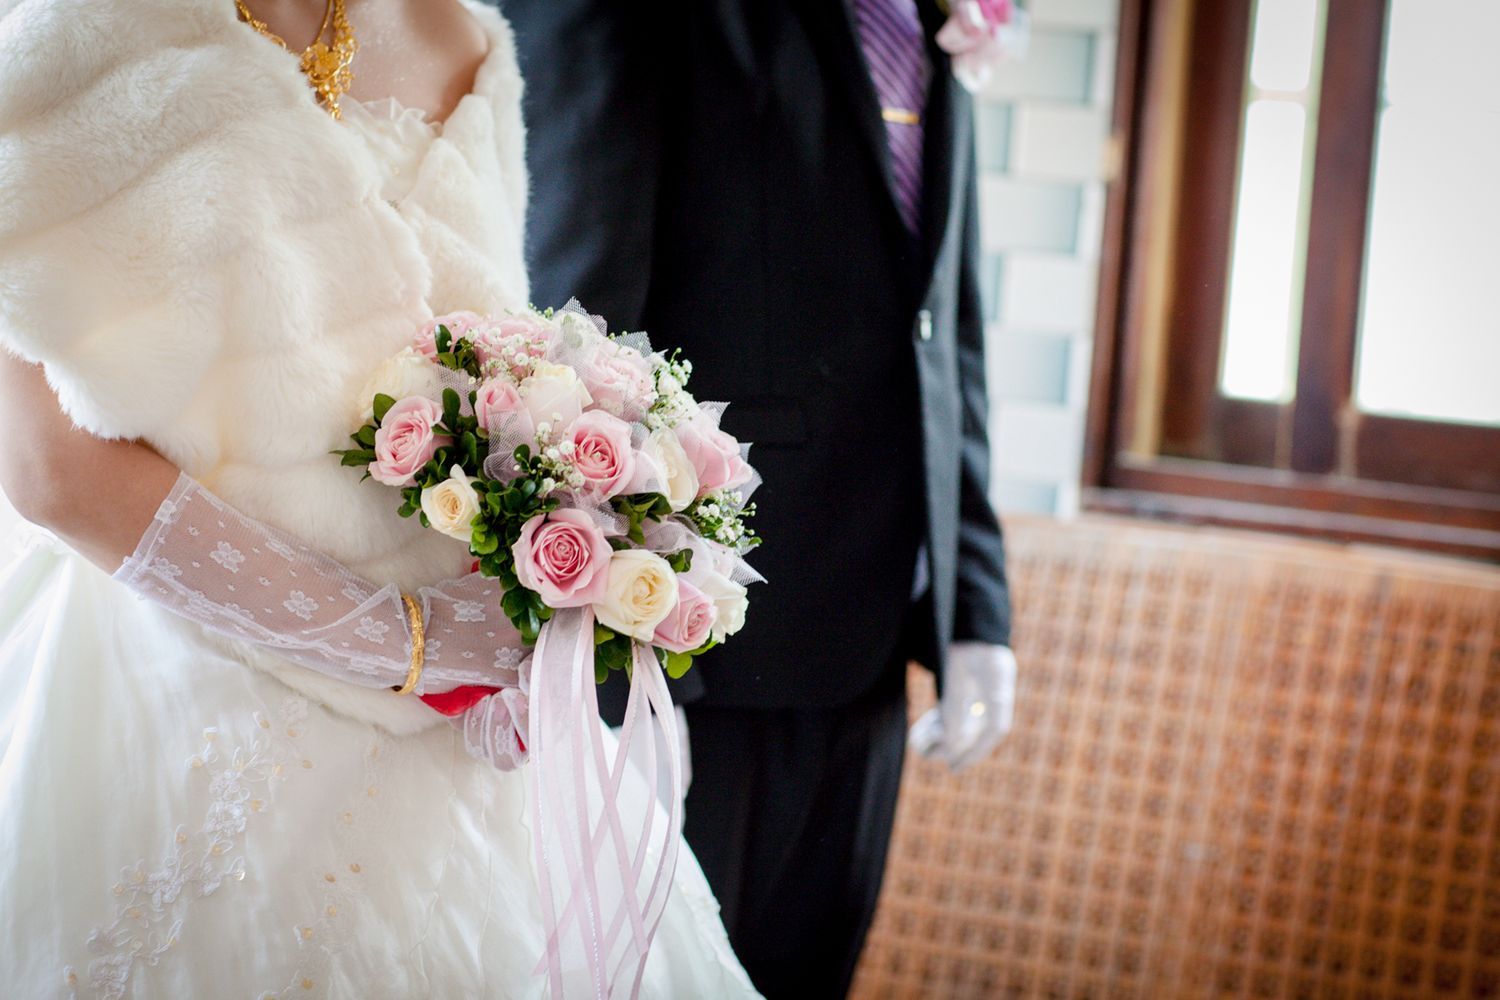 Naukowcy alarmują: co trzecia para nie korzysta z nocy poślubnej